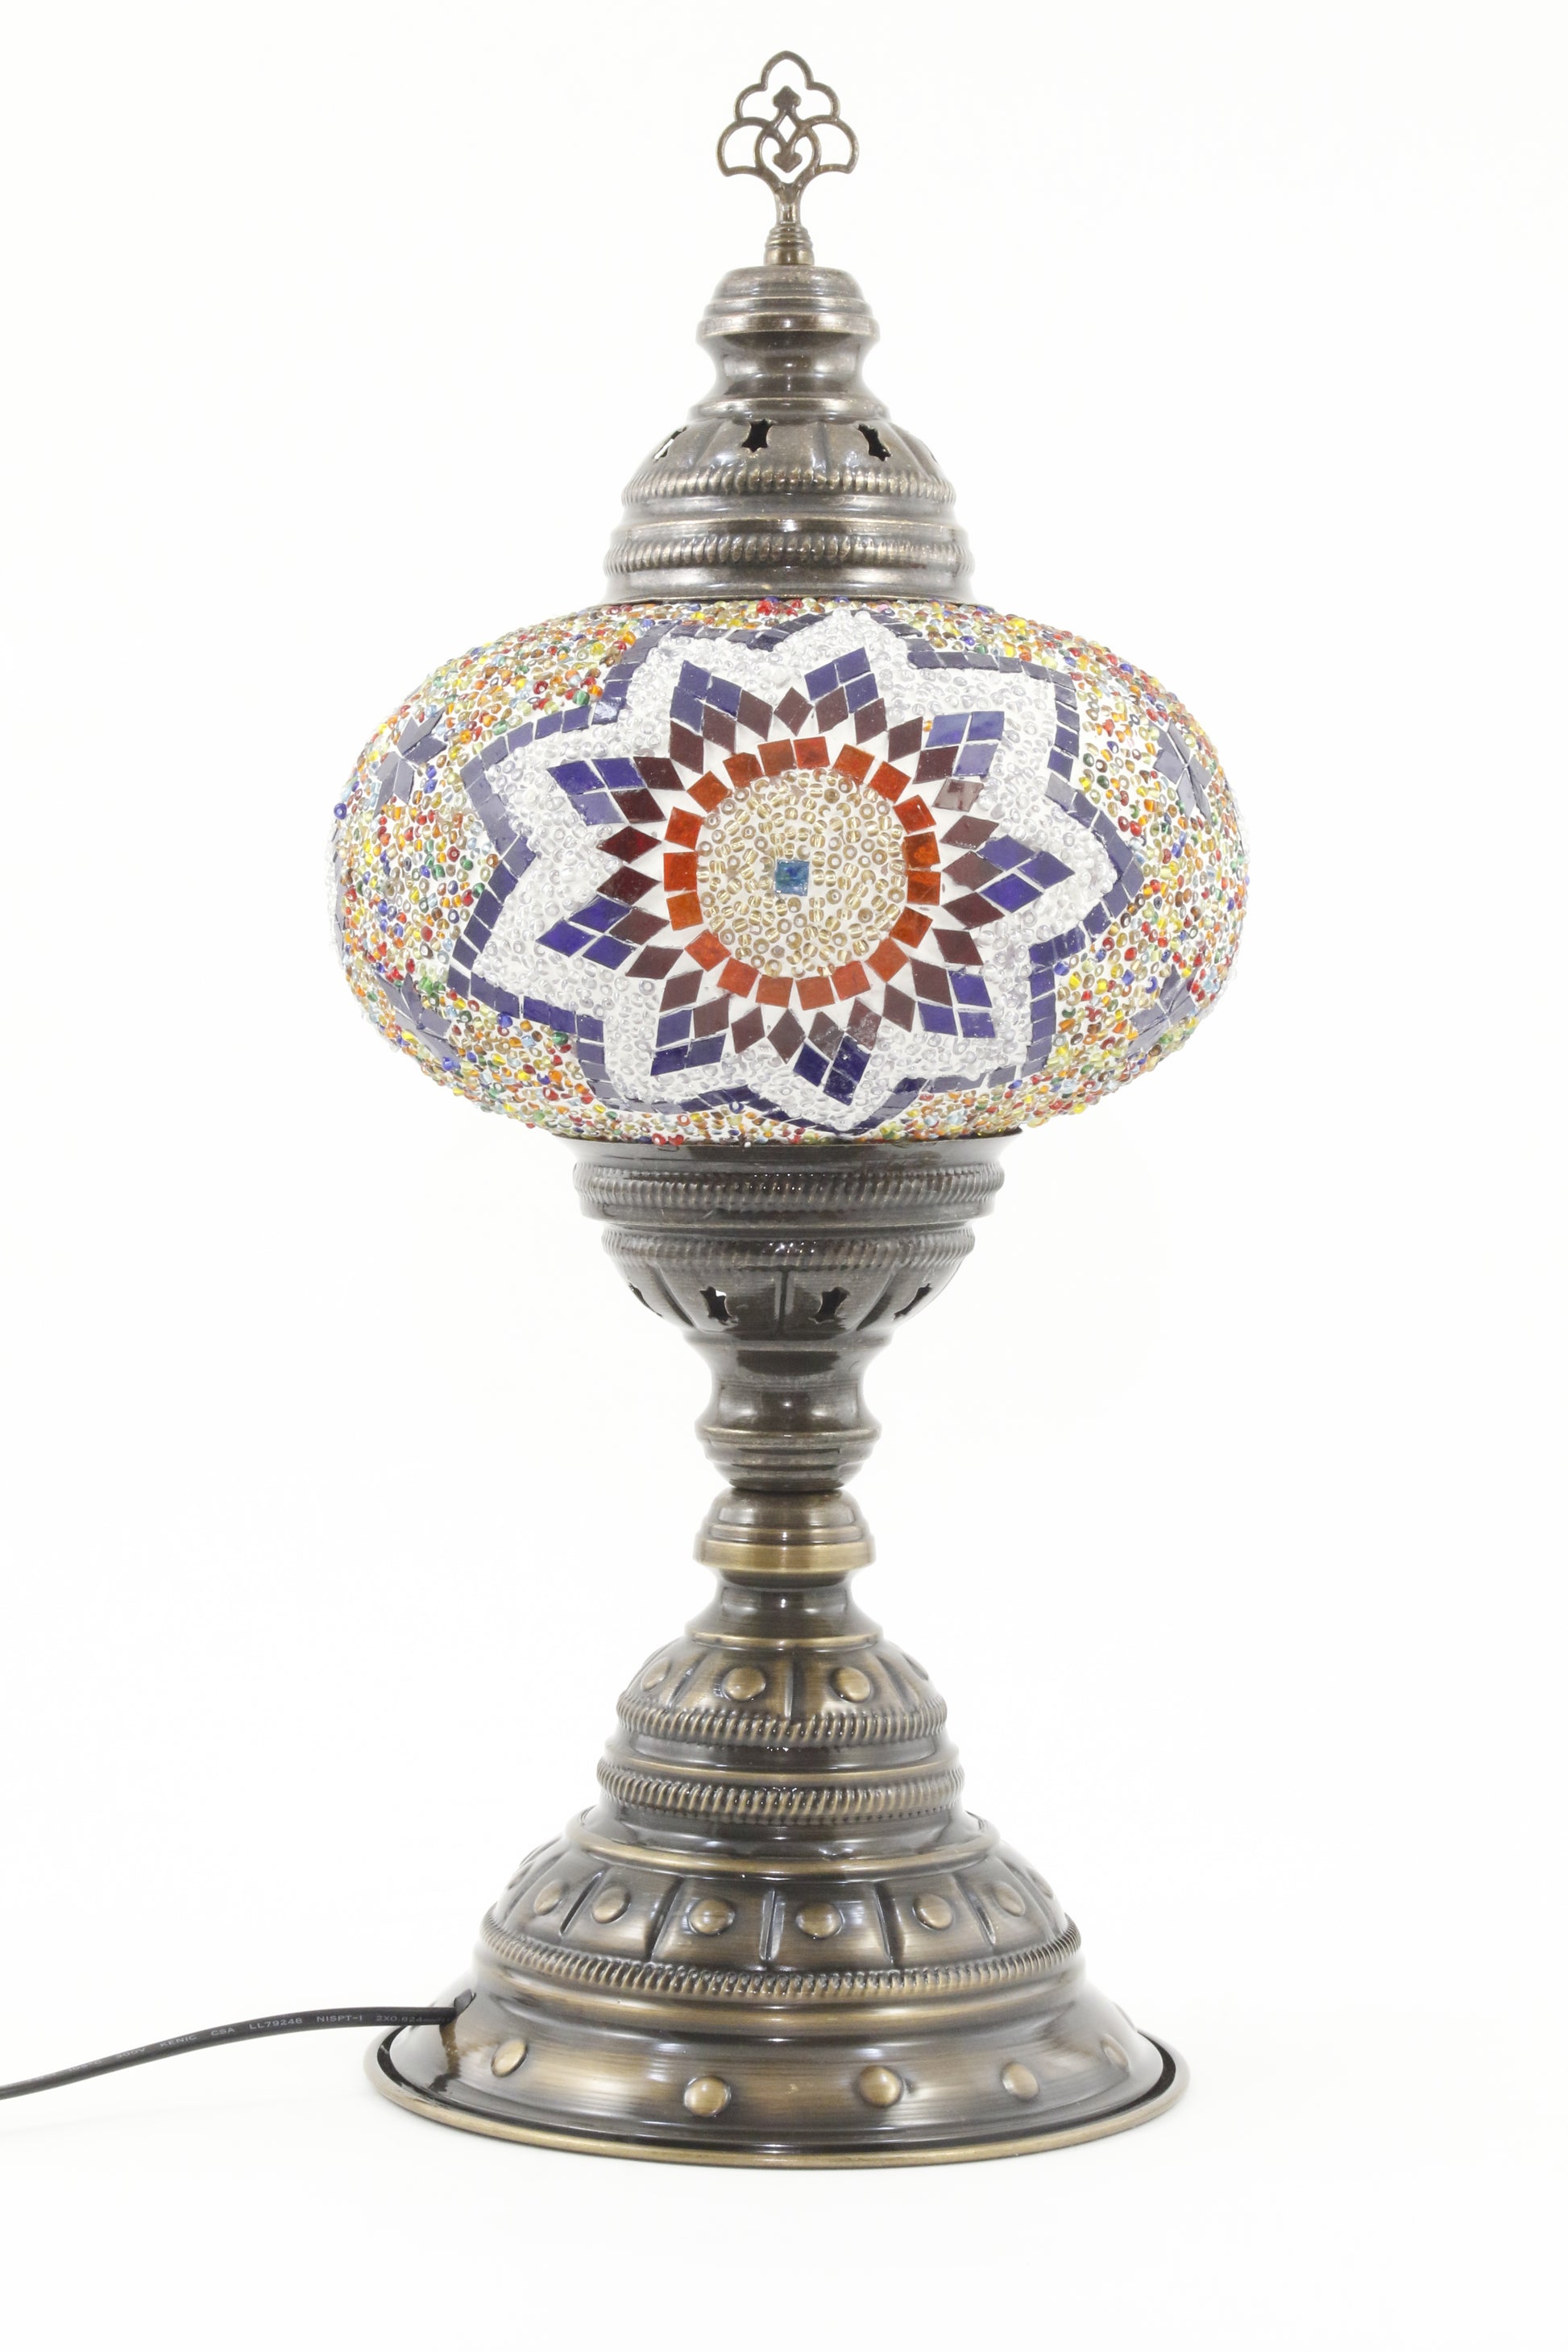 TURKISH MOSAIC TABLE LAMP MB4 RAINBOW 2-TURNED OFF